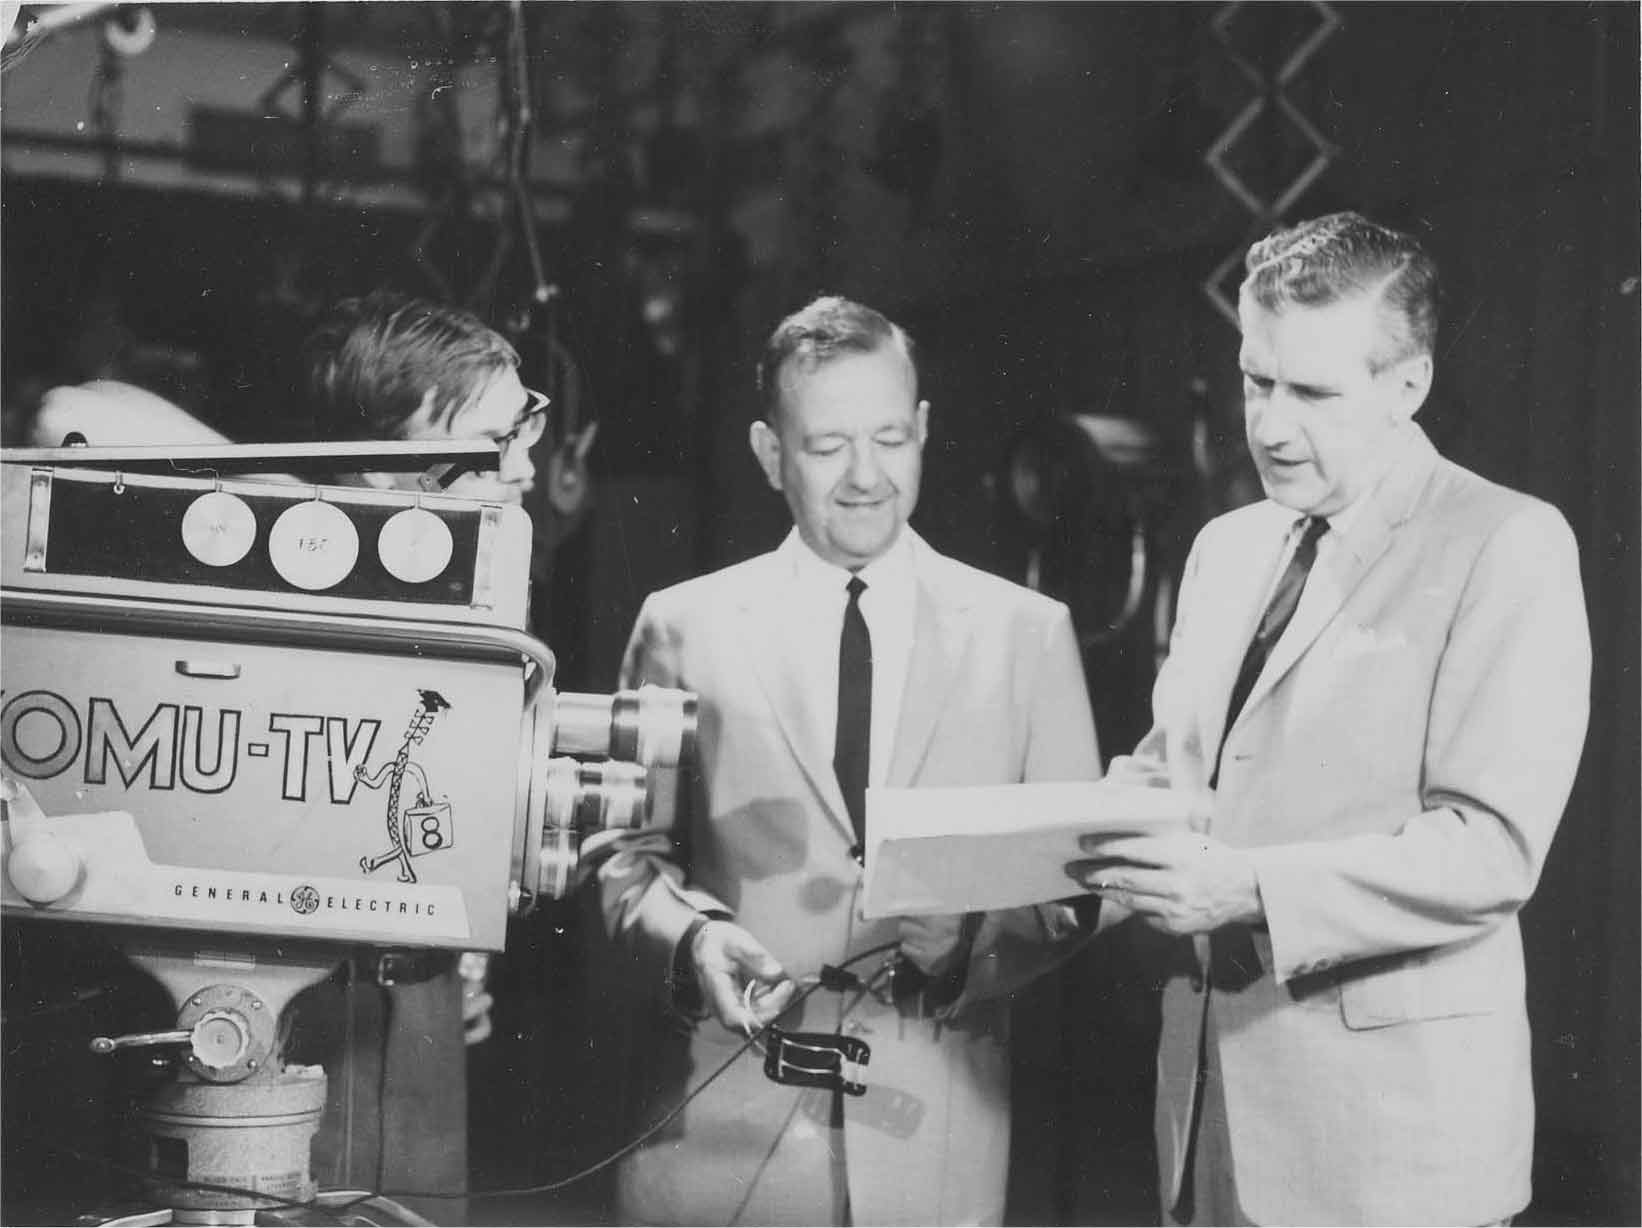 Dr. Lambert in the KOMU-TV Studio, ca. 1955